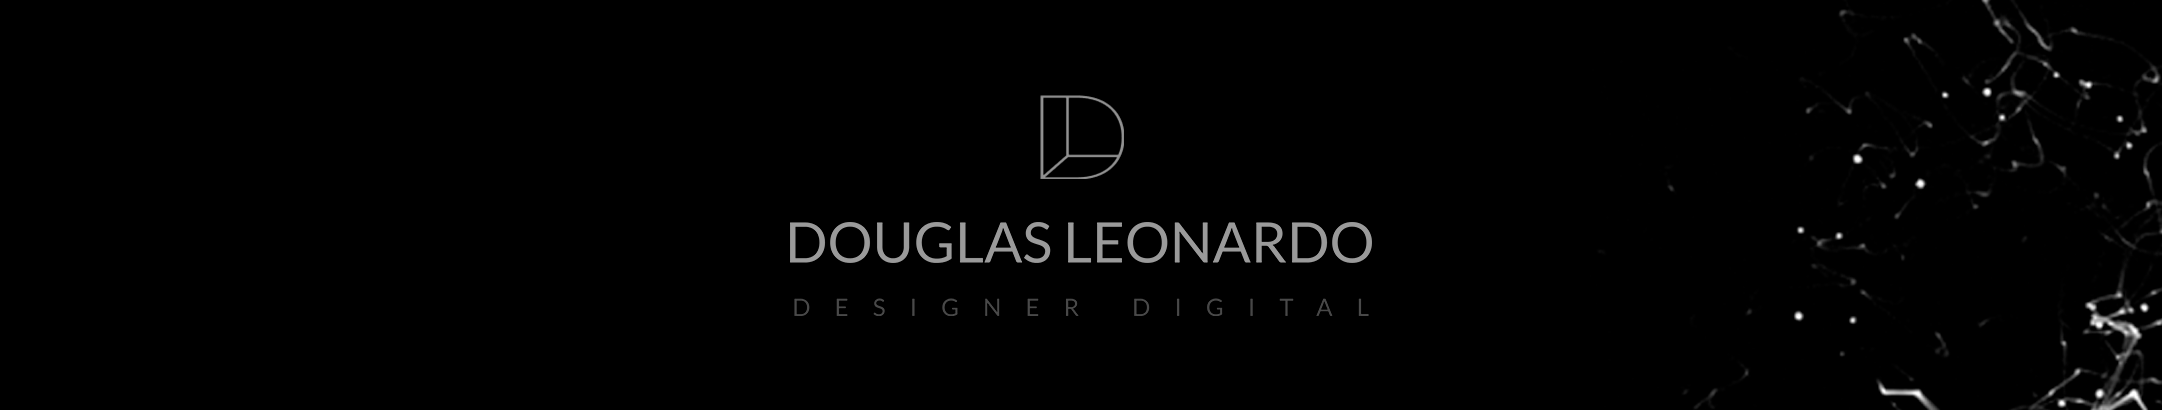 Douglas Leonardo profil başlığı